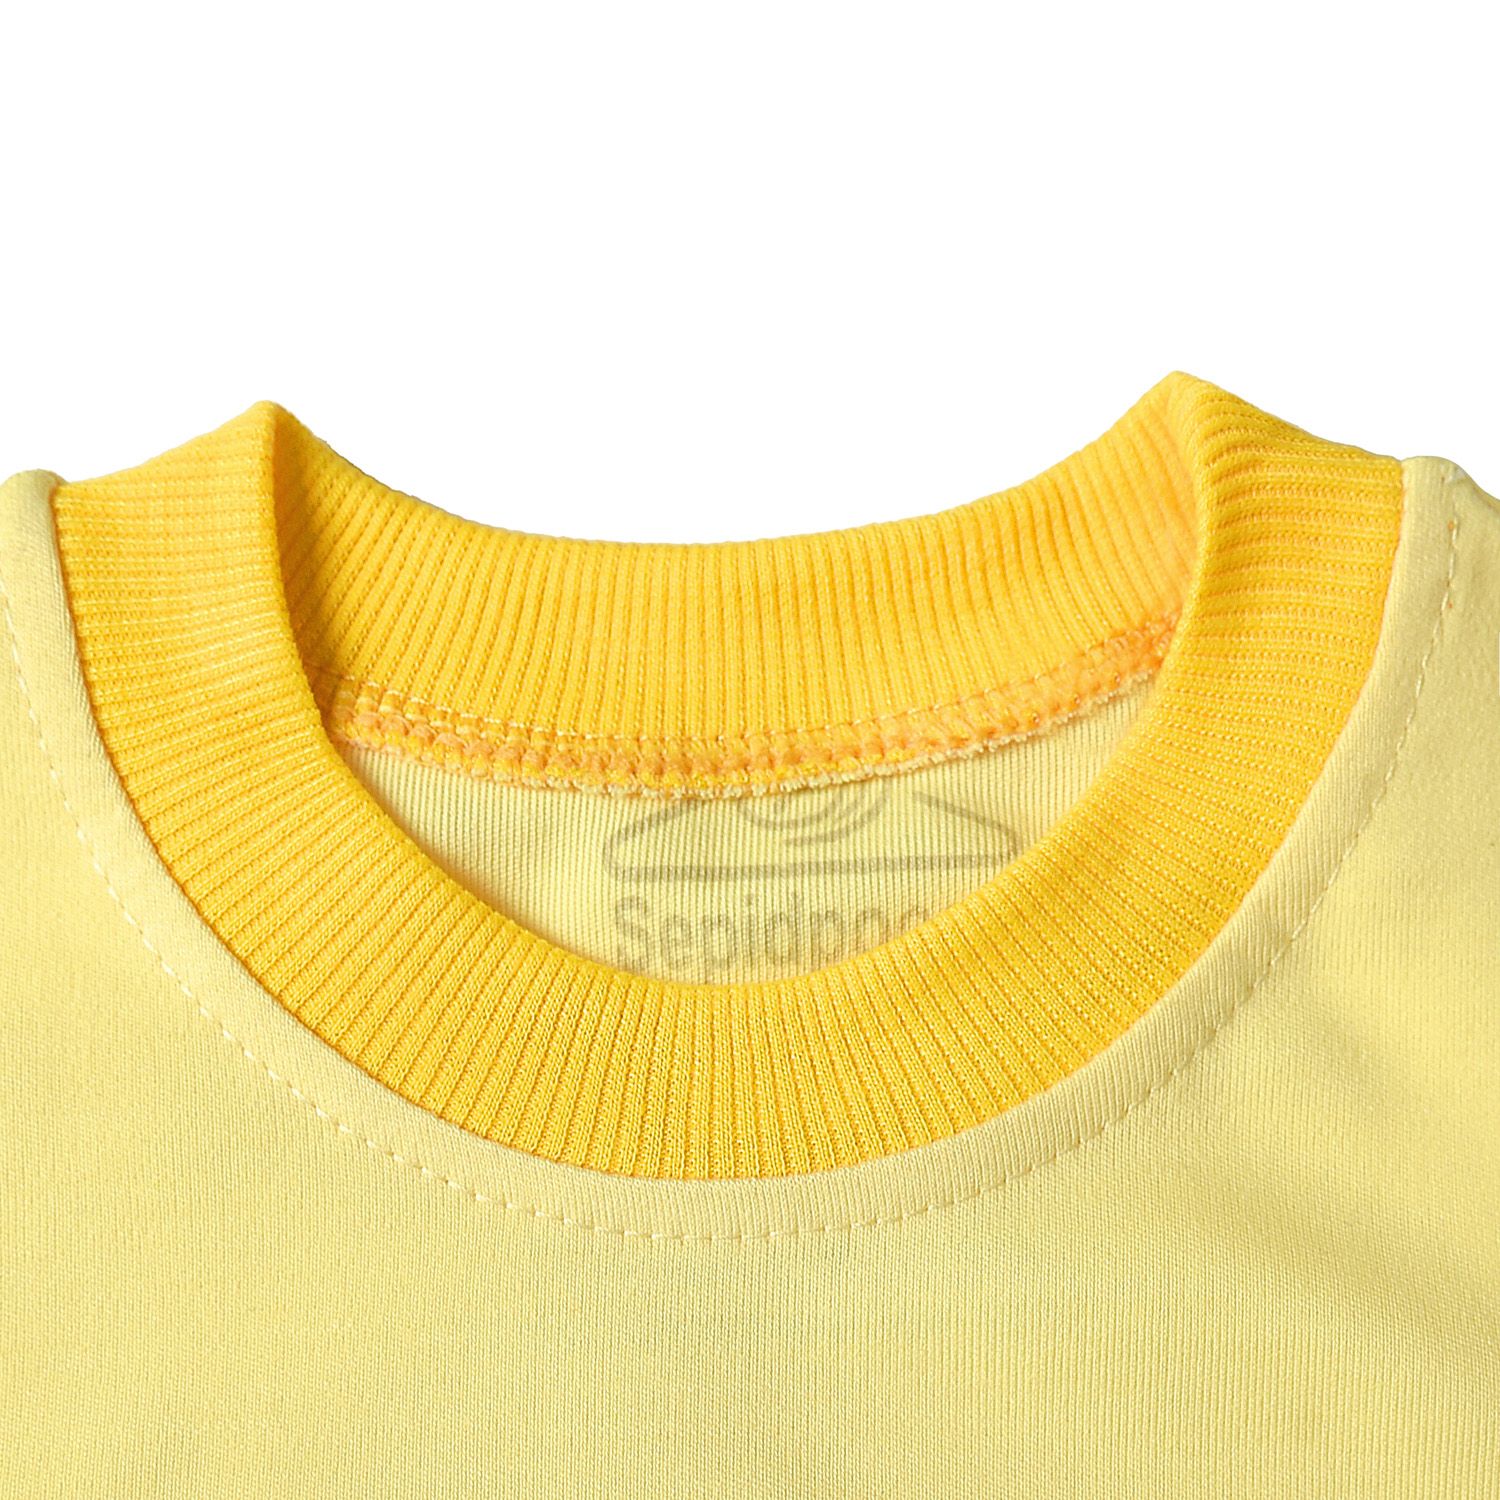 ست تی شرت آستین کوتاه و شلوارک بچگانه سپیدپوش مدل خرس کد 140410 -  - 2